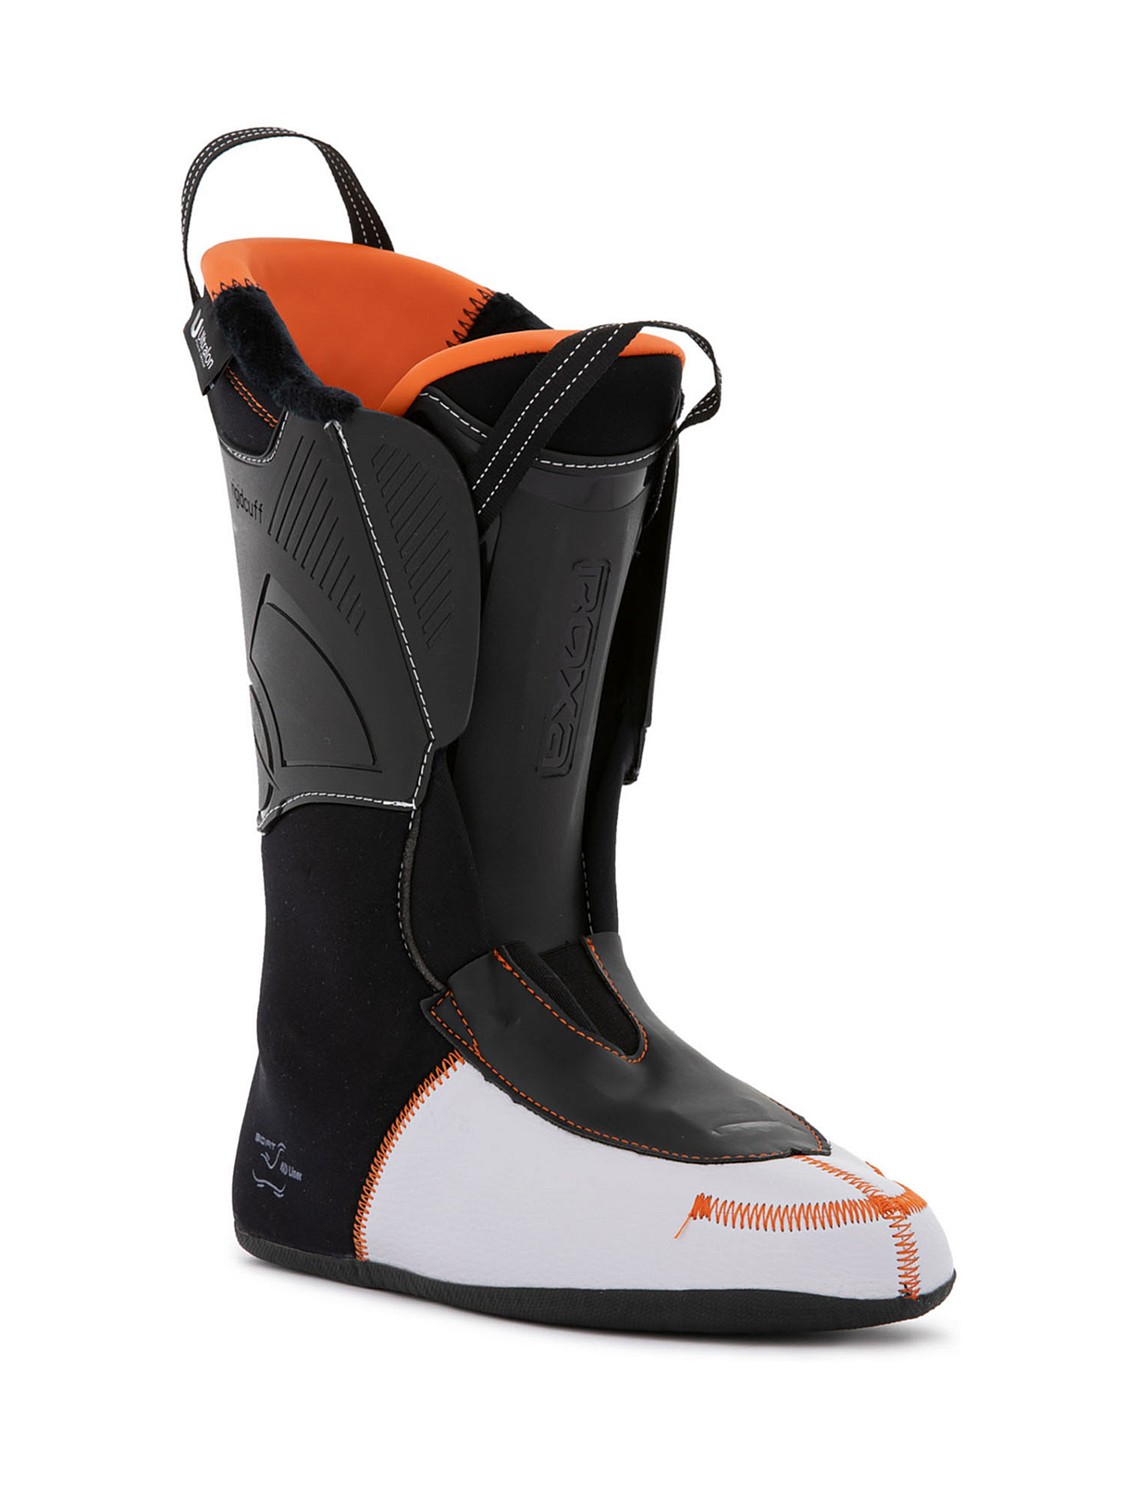 Горнолыжные ботинки ROXA Rfit Pro 120 Gw Dk Grey/Orange